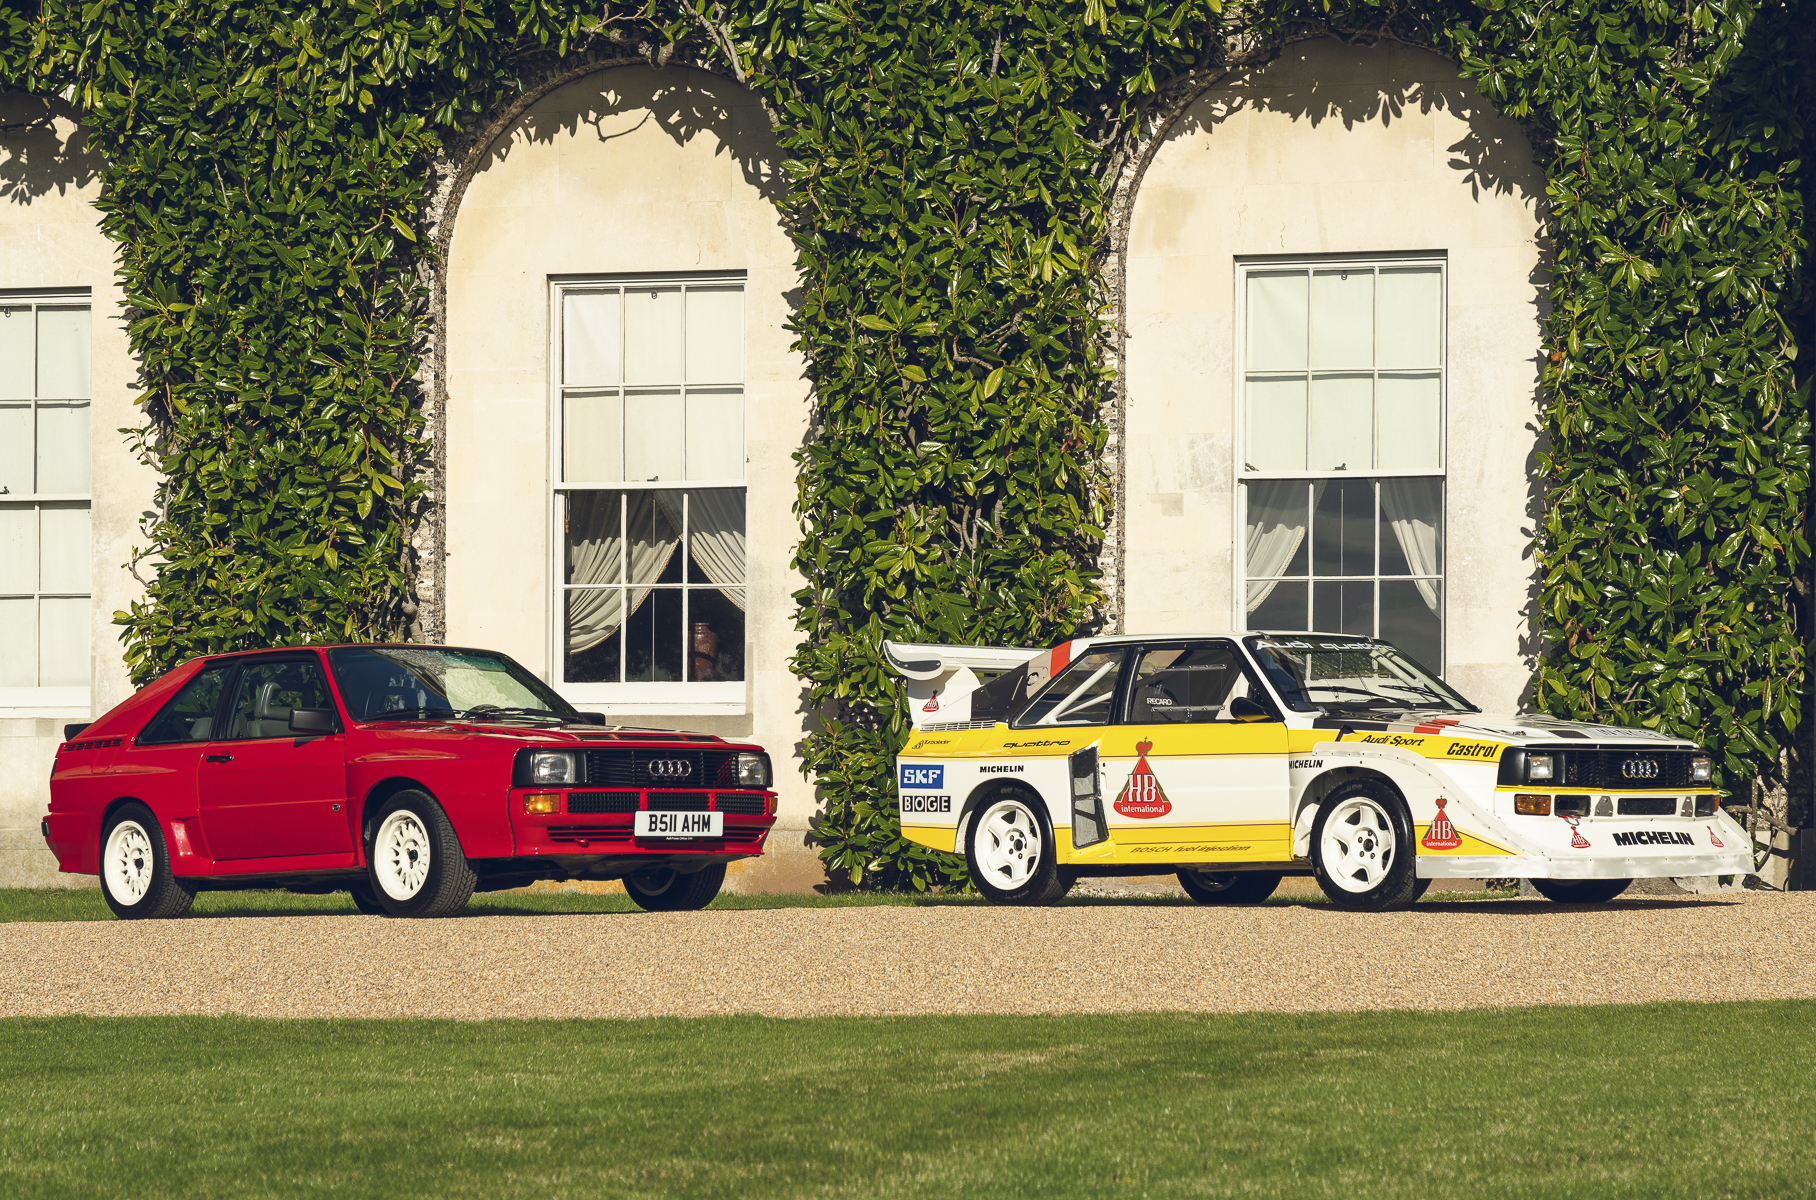 ## Audi S1 Когда петролхед слышит про S1, то перед его глазами встает монстр в бело-желтой боевой раскраске и ослепительная улыбка укротившей его француженки Мишель Мутон. В 1985 году на раллийные допы вышла эволюция — Audi Sport Quattro S1 E2 с отдачей до 600 л.с. и генерирующим порядка полтонны прижимной силы аэродинамическим оперением. Культовый S1 не стал чемпионом WRC, зато безжалостно громил соперников в подъеме на гору Pikes Peak International Hill Climb и записал на свой счет три победы подряд.